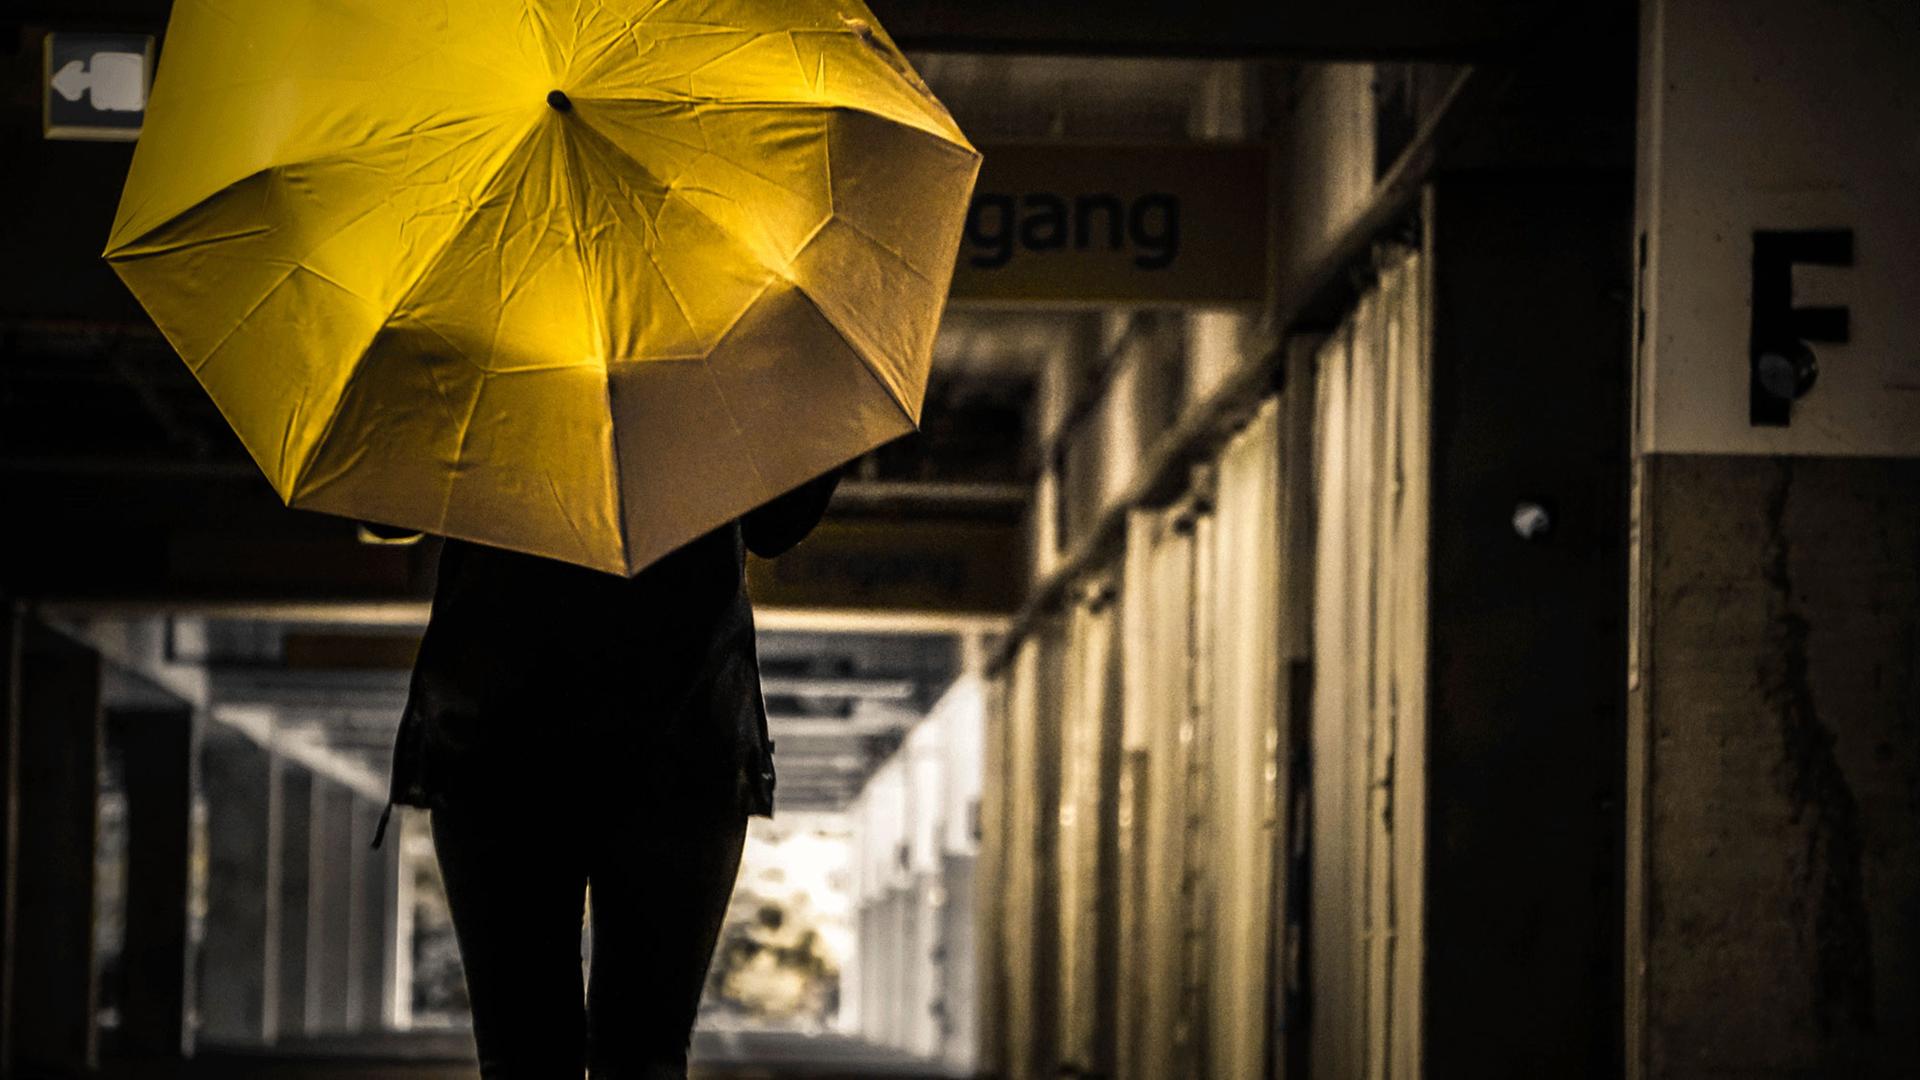 Die einzige Spur, ein gelber Regenschirm, führt ihn zu Anna.